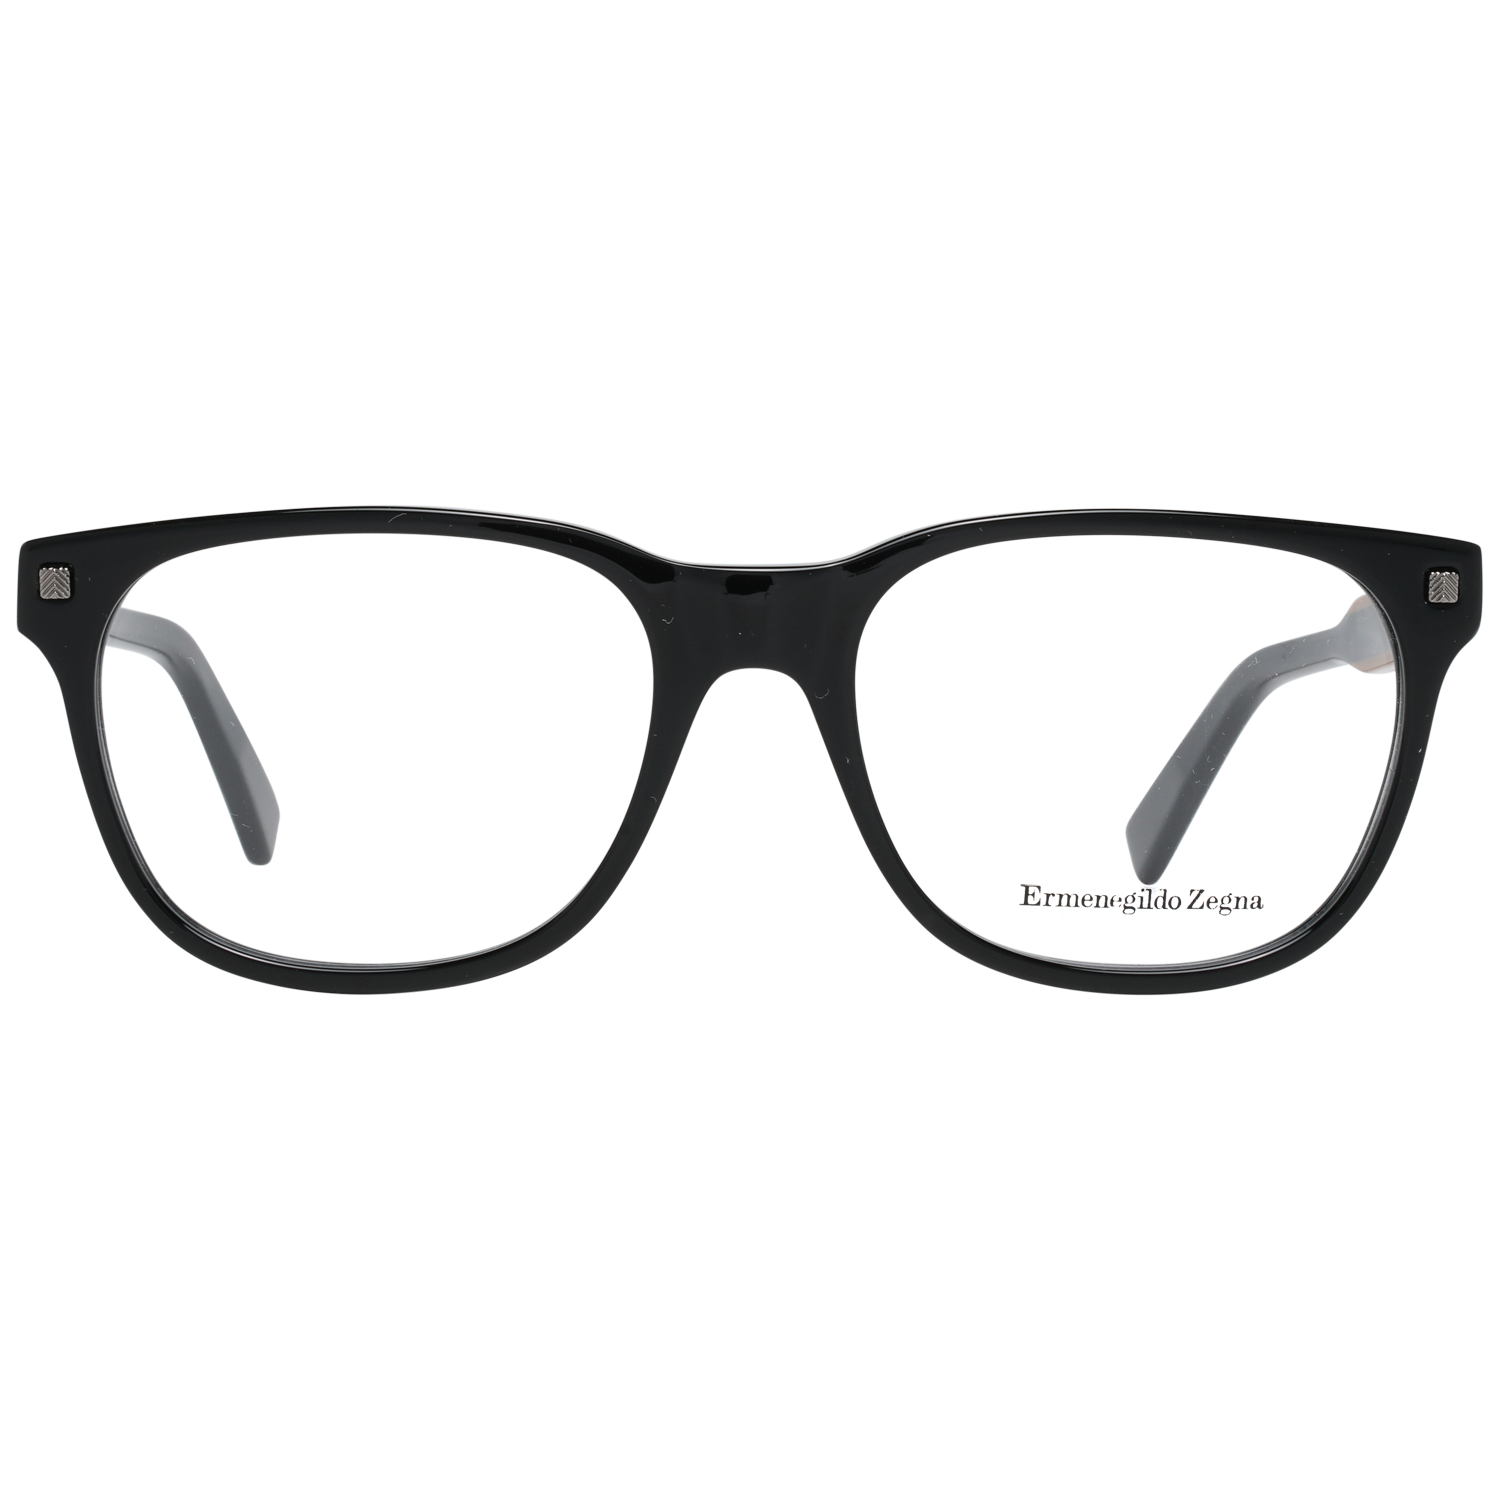 Ermenegildo Zegna Frames Ermenegildo Zegna Glasses Optical Frame EZ5120 001 54 Eyeglasses Eyewear UK USA Australia 